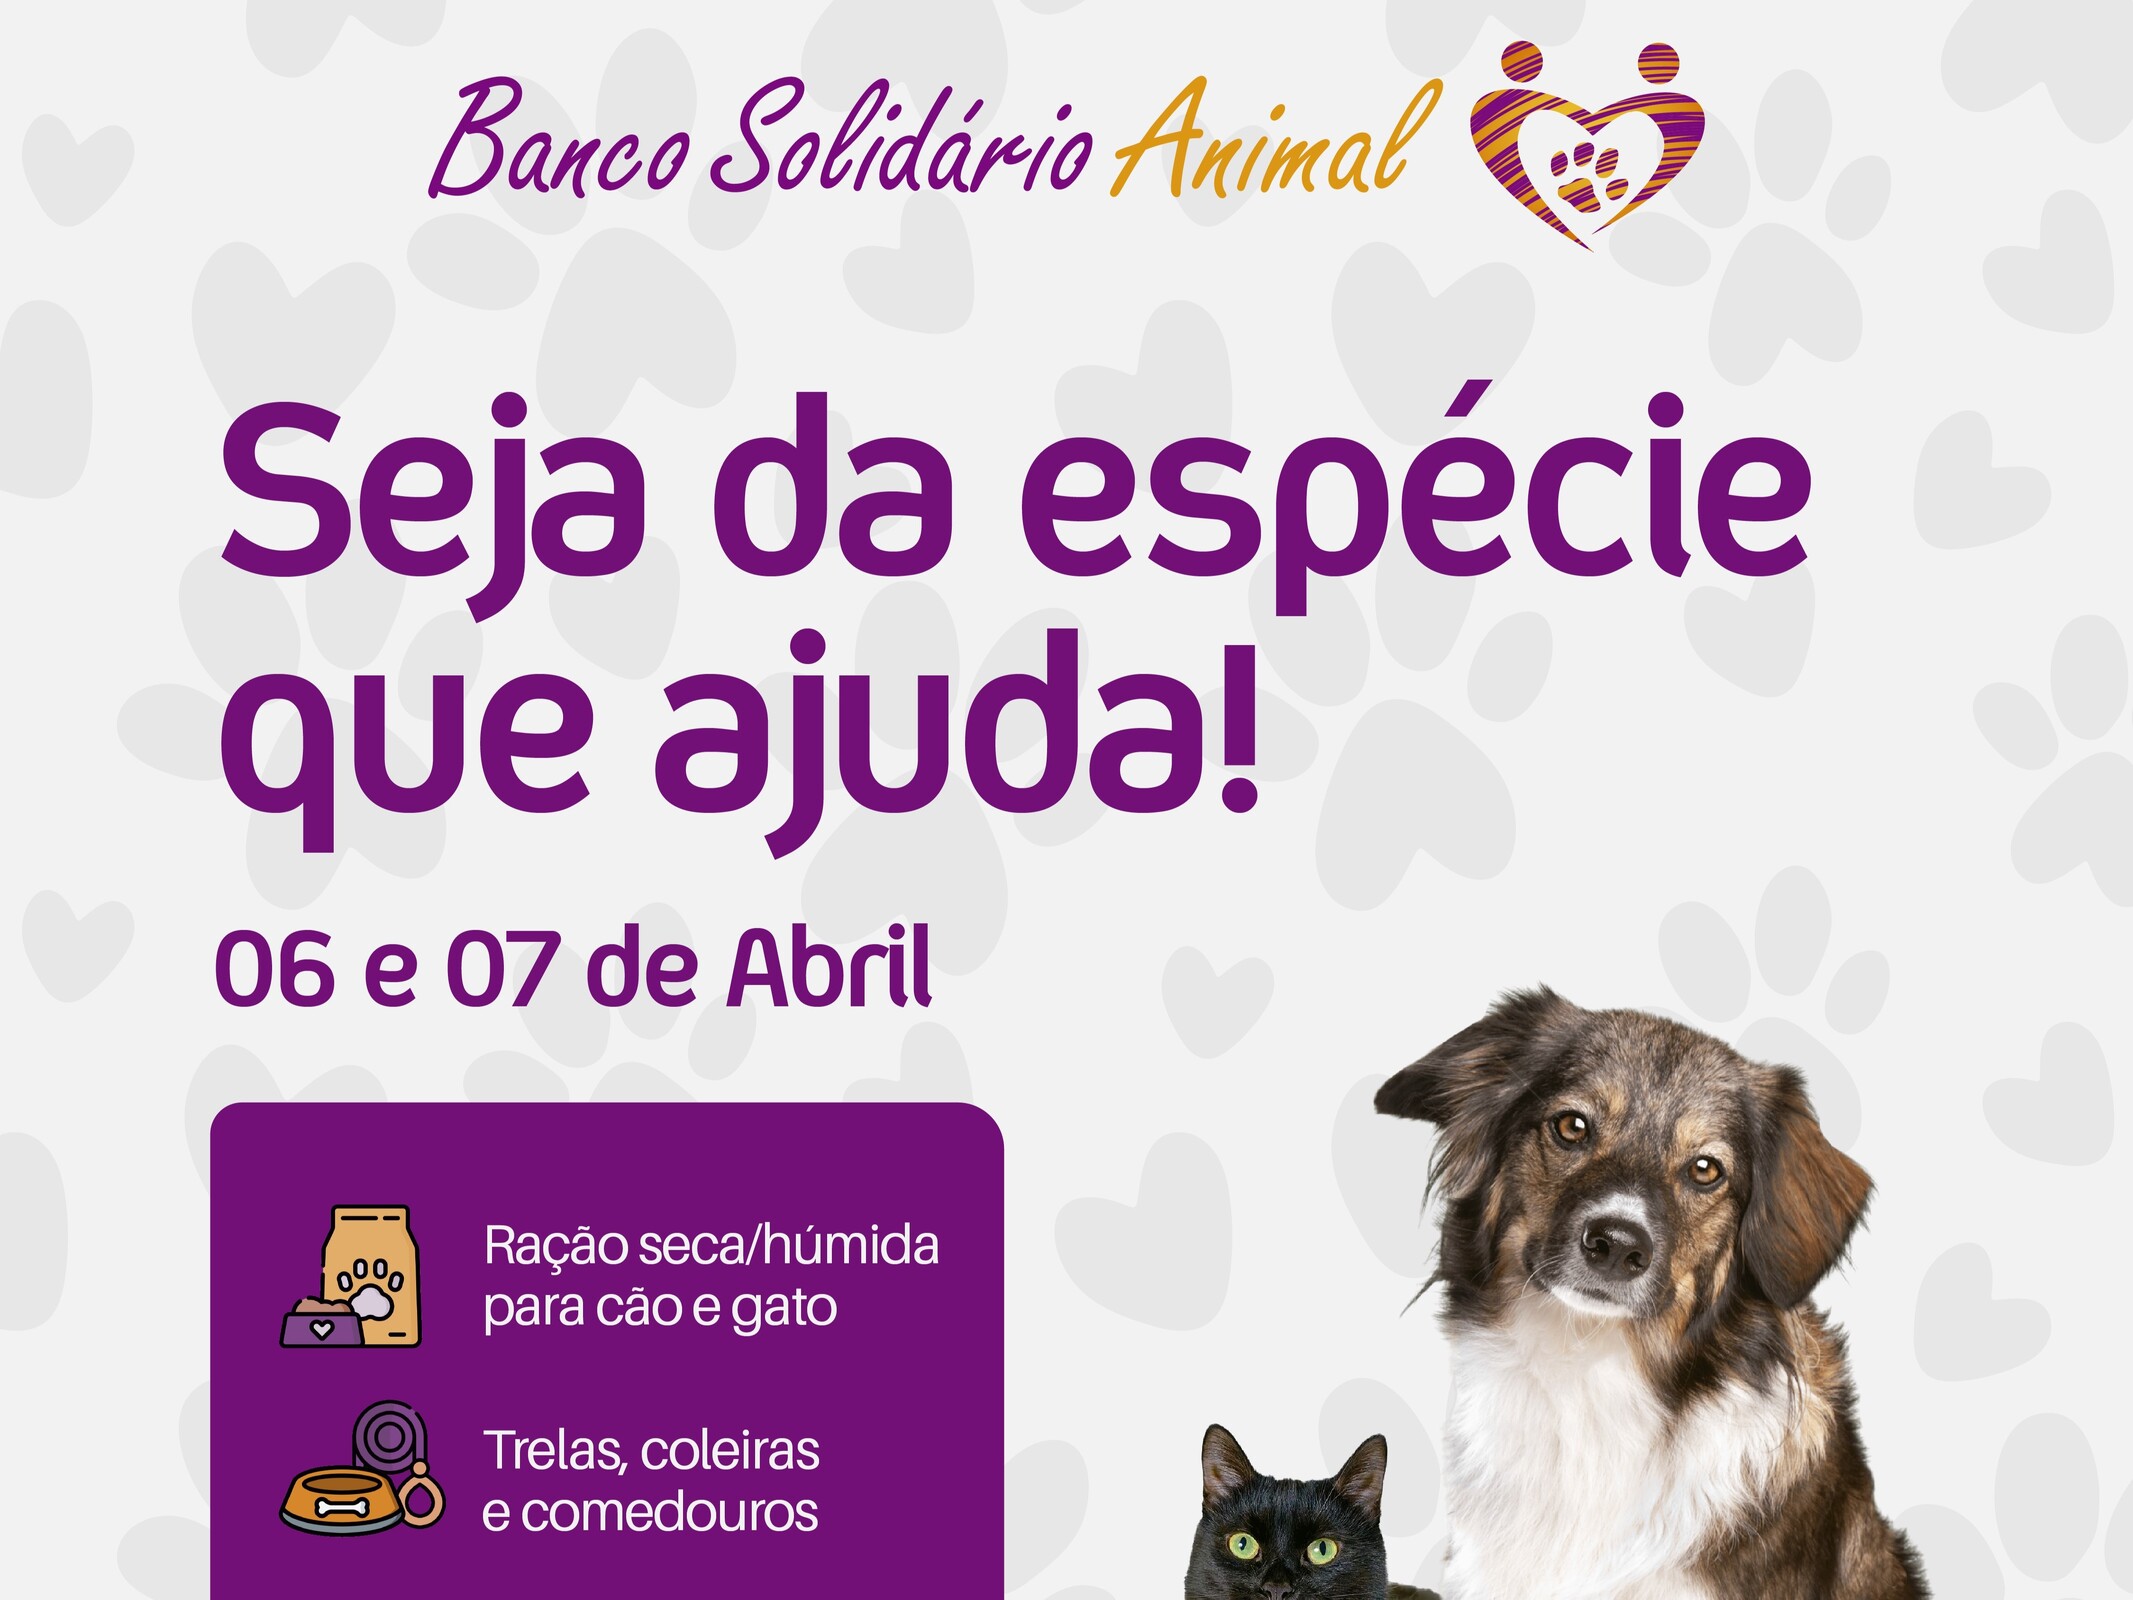 Banco Solidário Animal: colabore com os seus donativos!